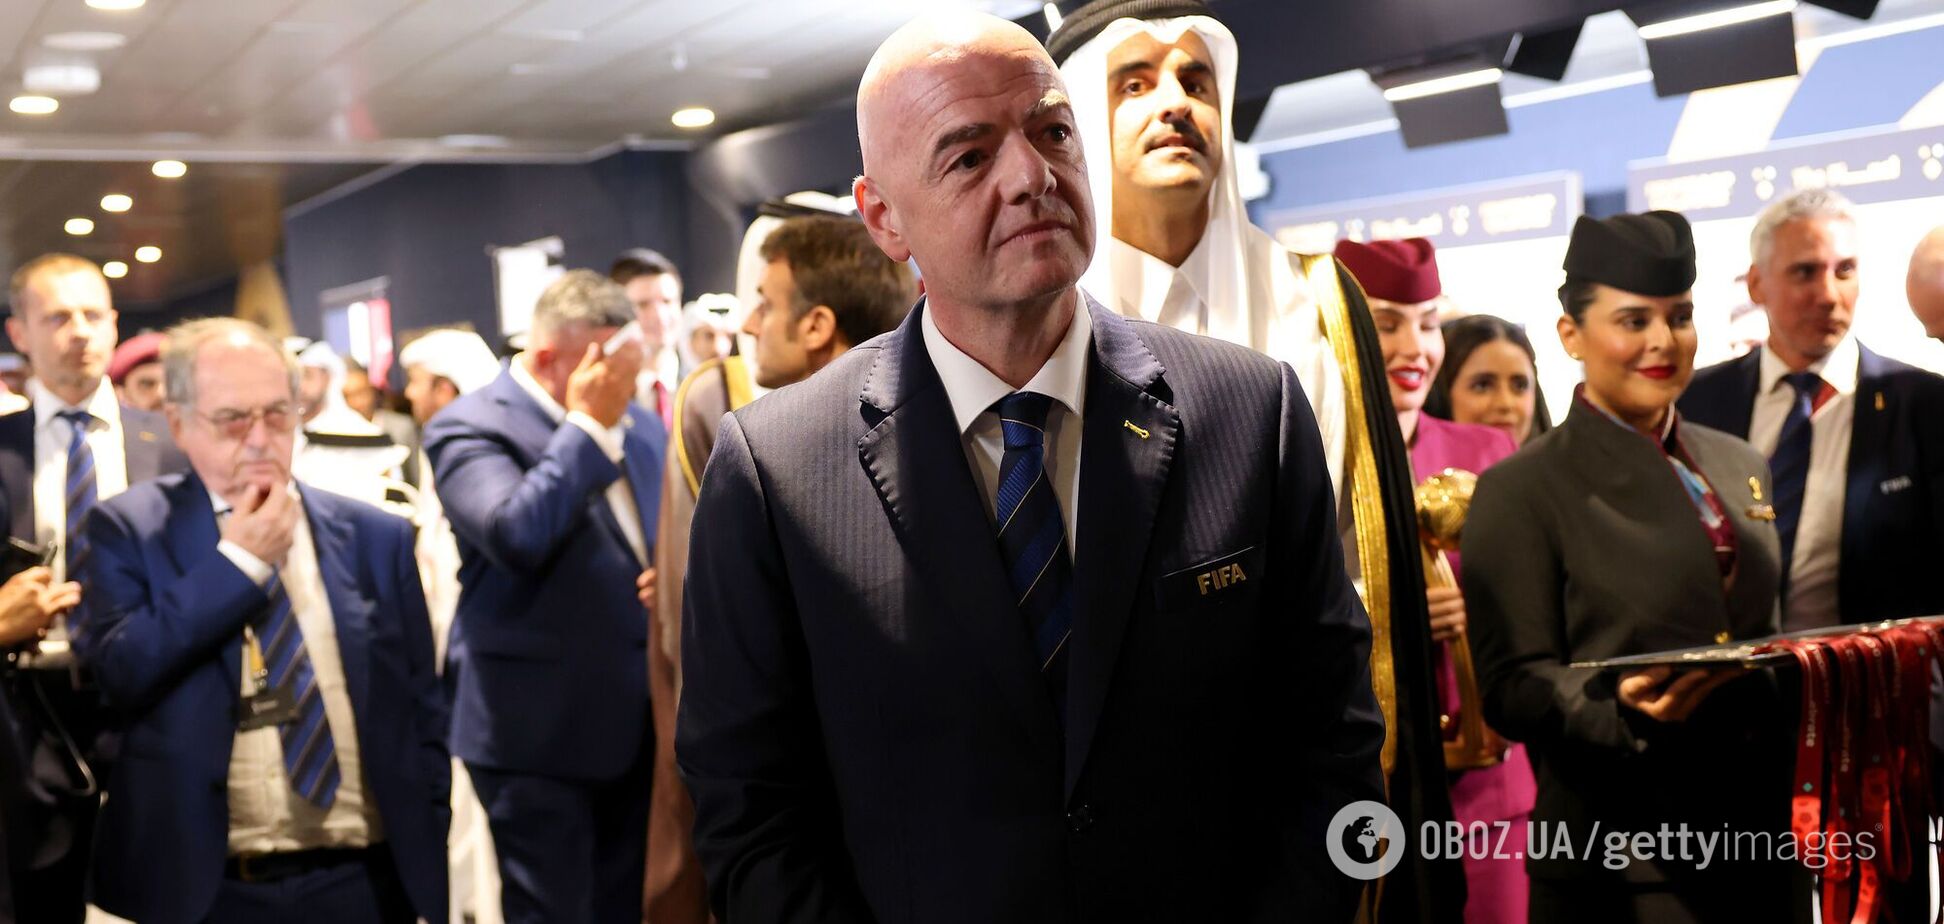 Стадион в Катаре освистал президента ФИФА во время награждения на ЧМ-2022. Видео